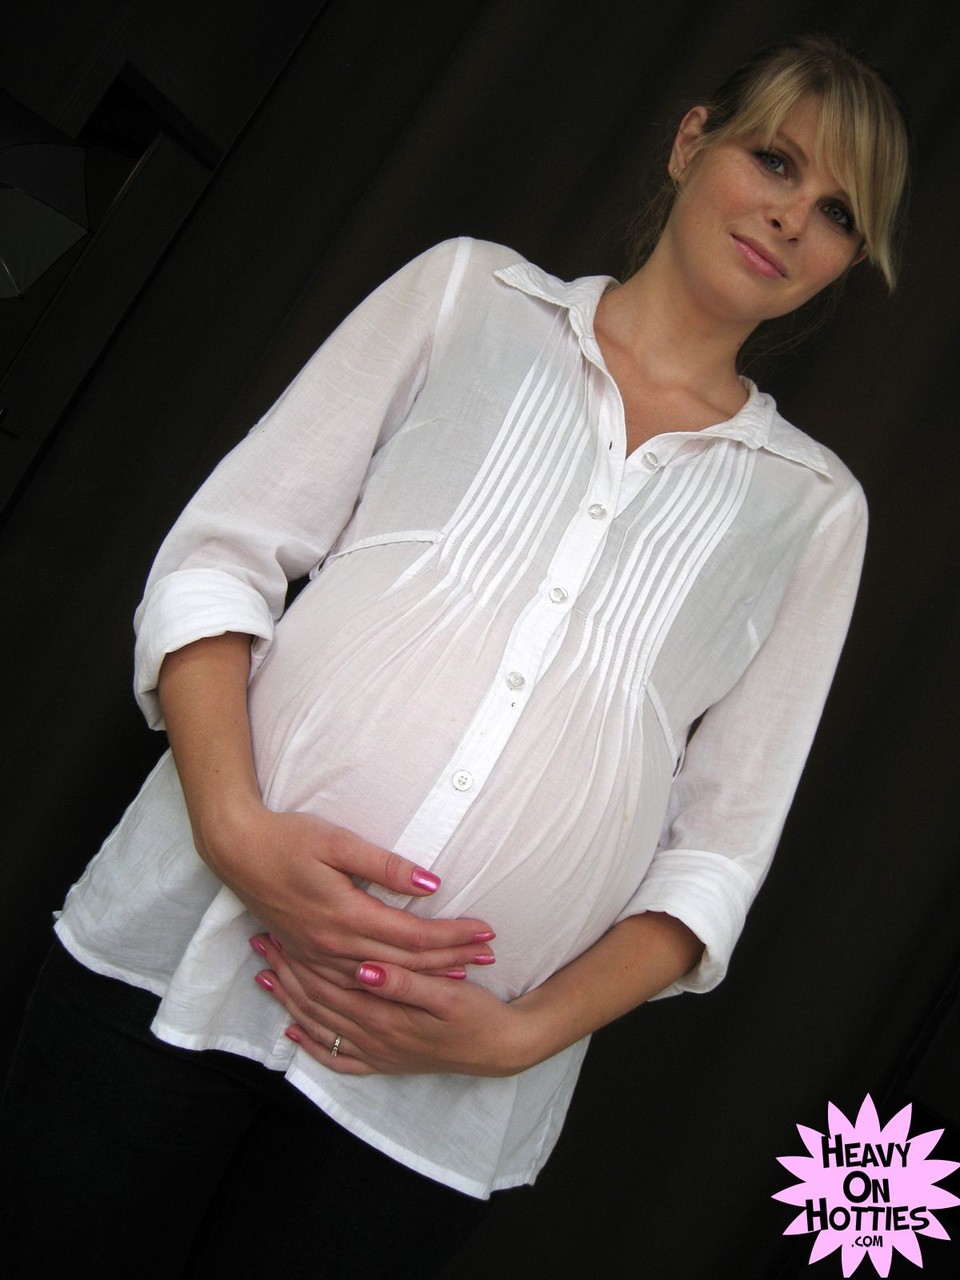 Sweet pregnant Ukrainian Wiska milks her big tits and gives a blowjob foto pornográfica #428635789 | Heavy On Hotties Pics, Wiska, Pregnant, pornografia móvel